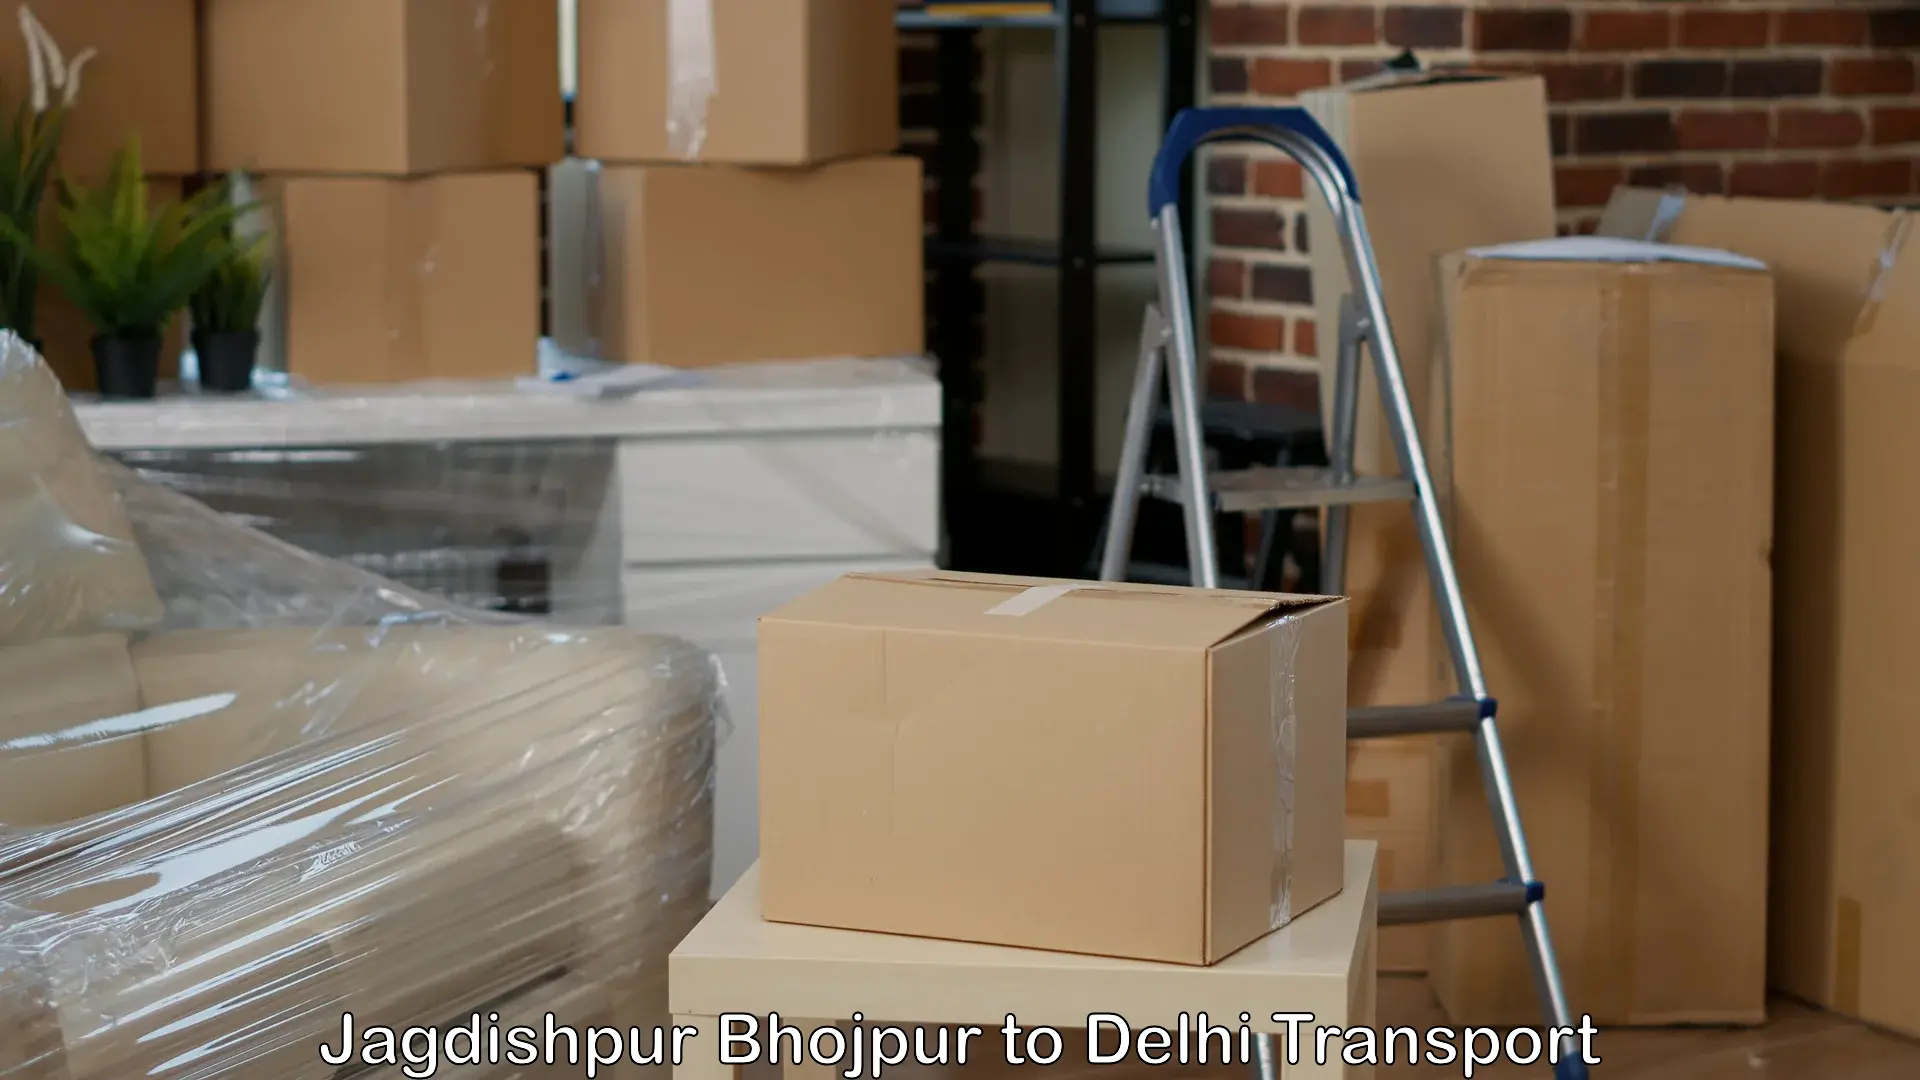 Truck transport companies in India Jagdishpur Bhojpur to Jamia Hamdard New Delhi